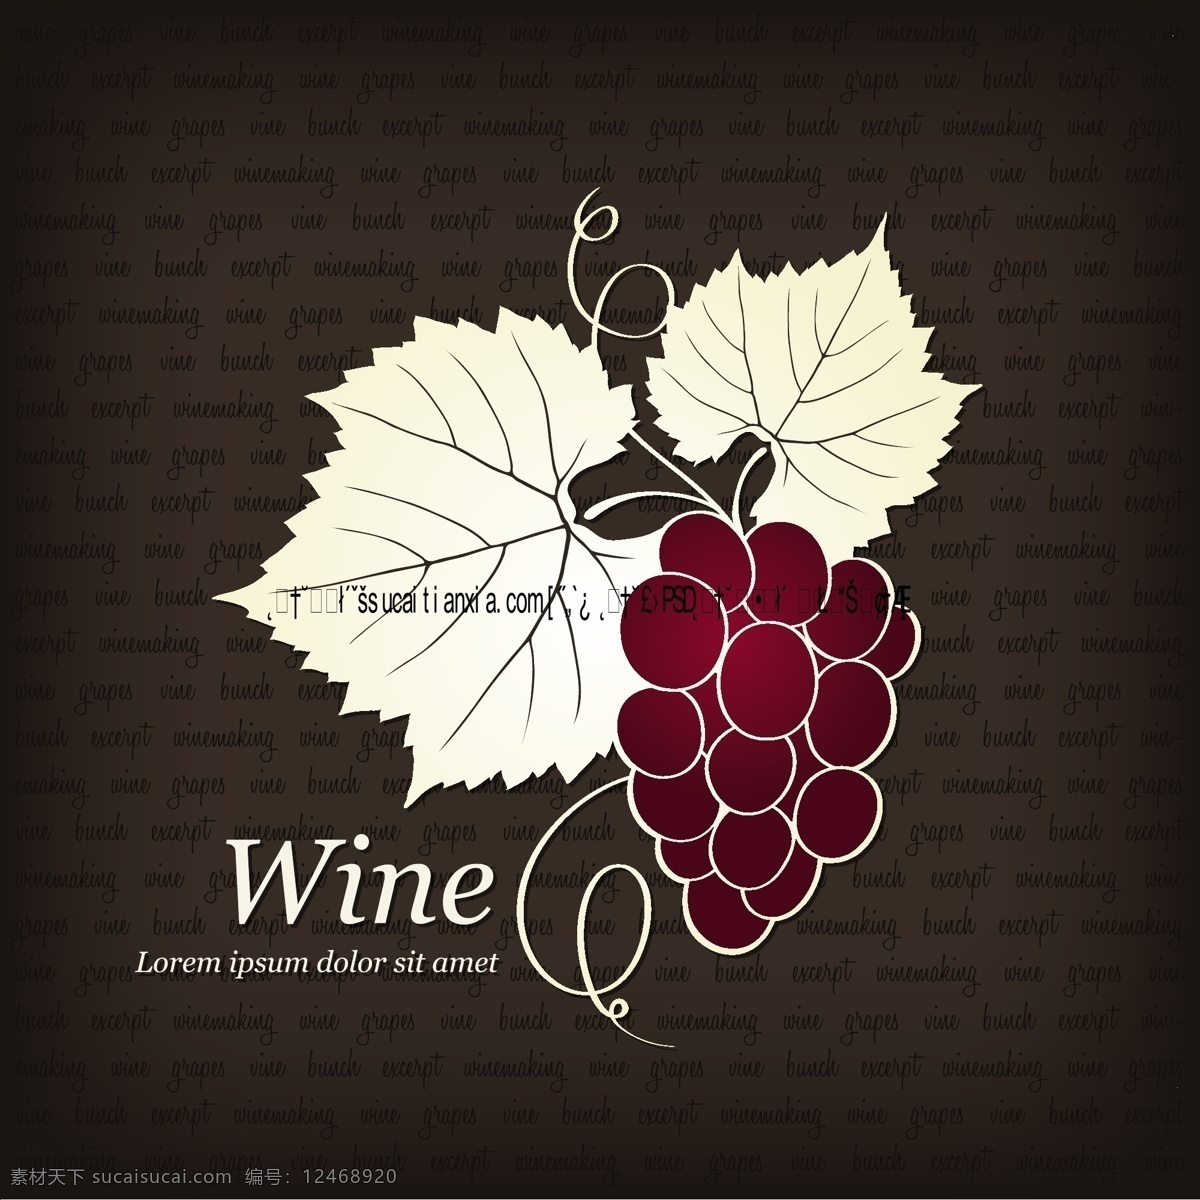 线描 葡萄酒 标志 图标 矢量 红酒标志 葡萄 葡萄酒标志 线描图标 叶脉 叶子 矢量图 其他矢量图